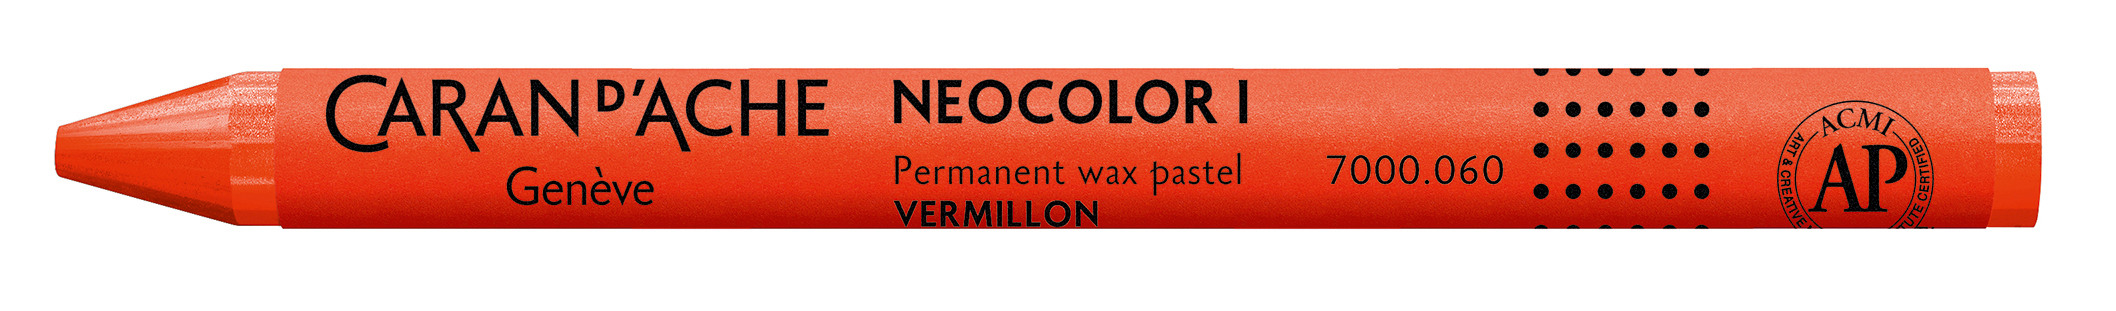 CARAN D'ACHE Wachsmalkreide Neocolor 1 7000.060 zinnober